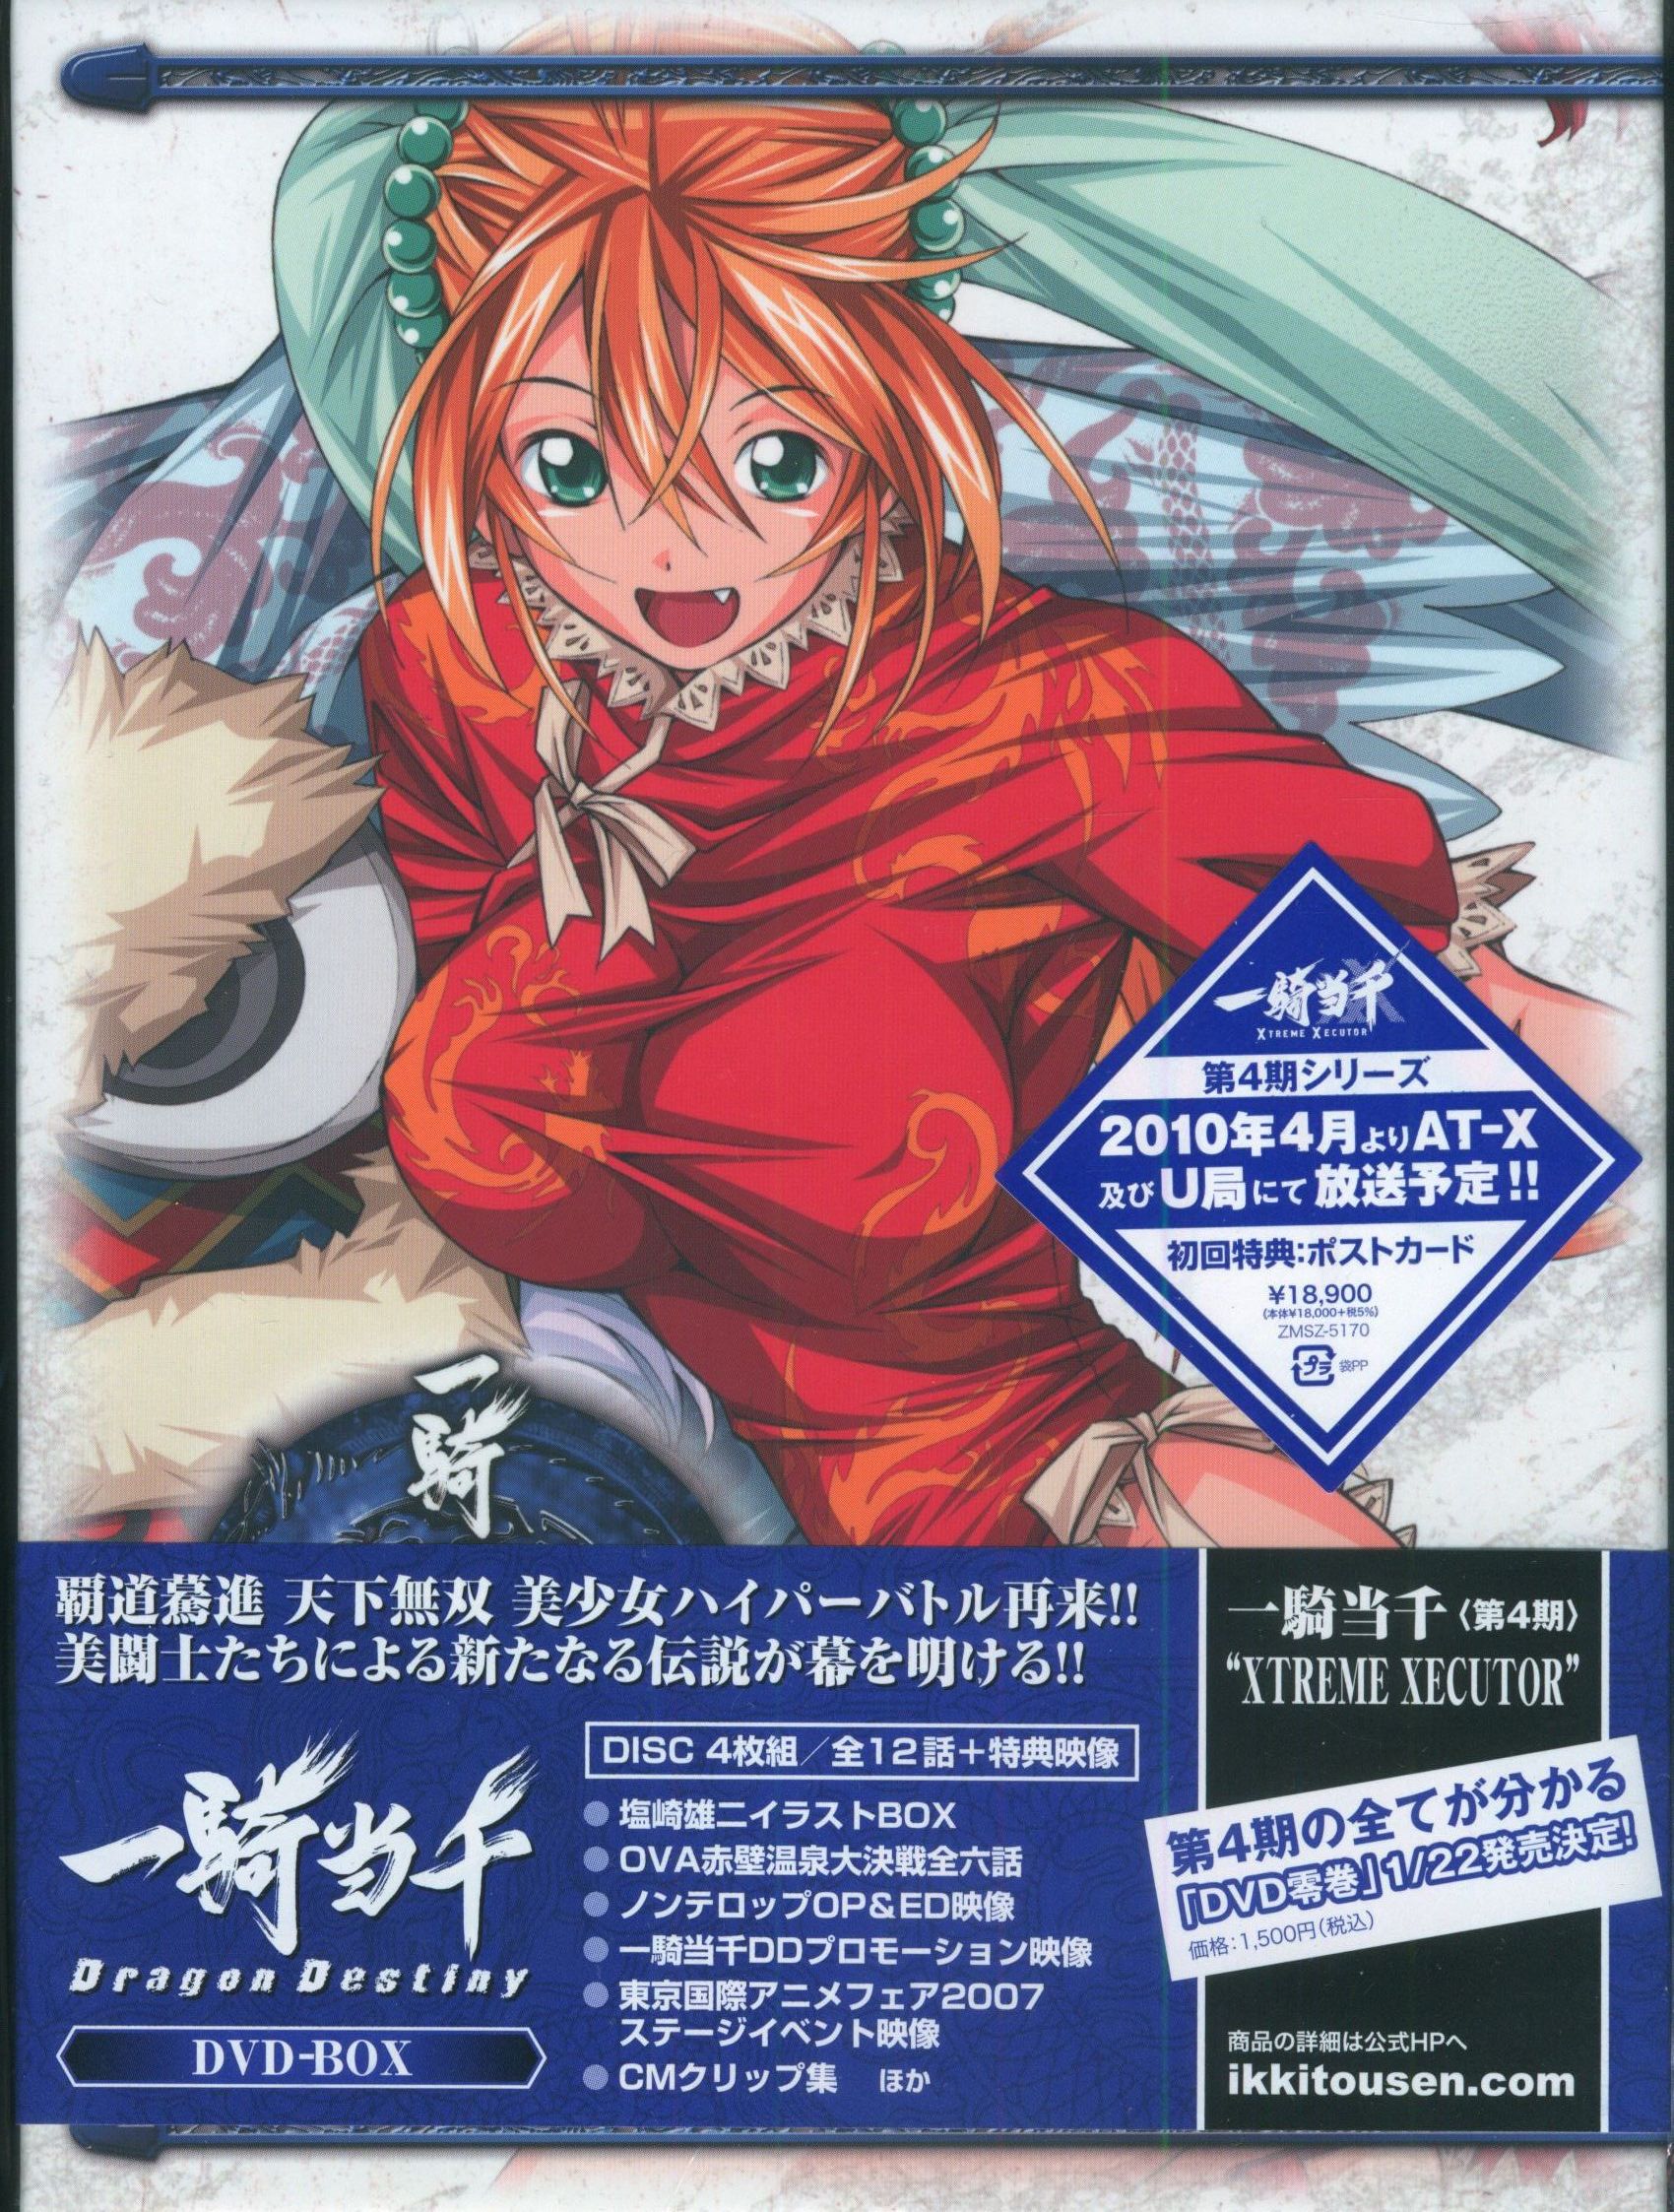 一騎当千Dragon Destiny 全6巻+GG 6巻DVDセット - アニメ